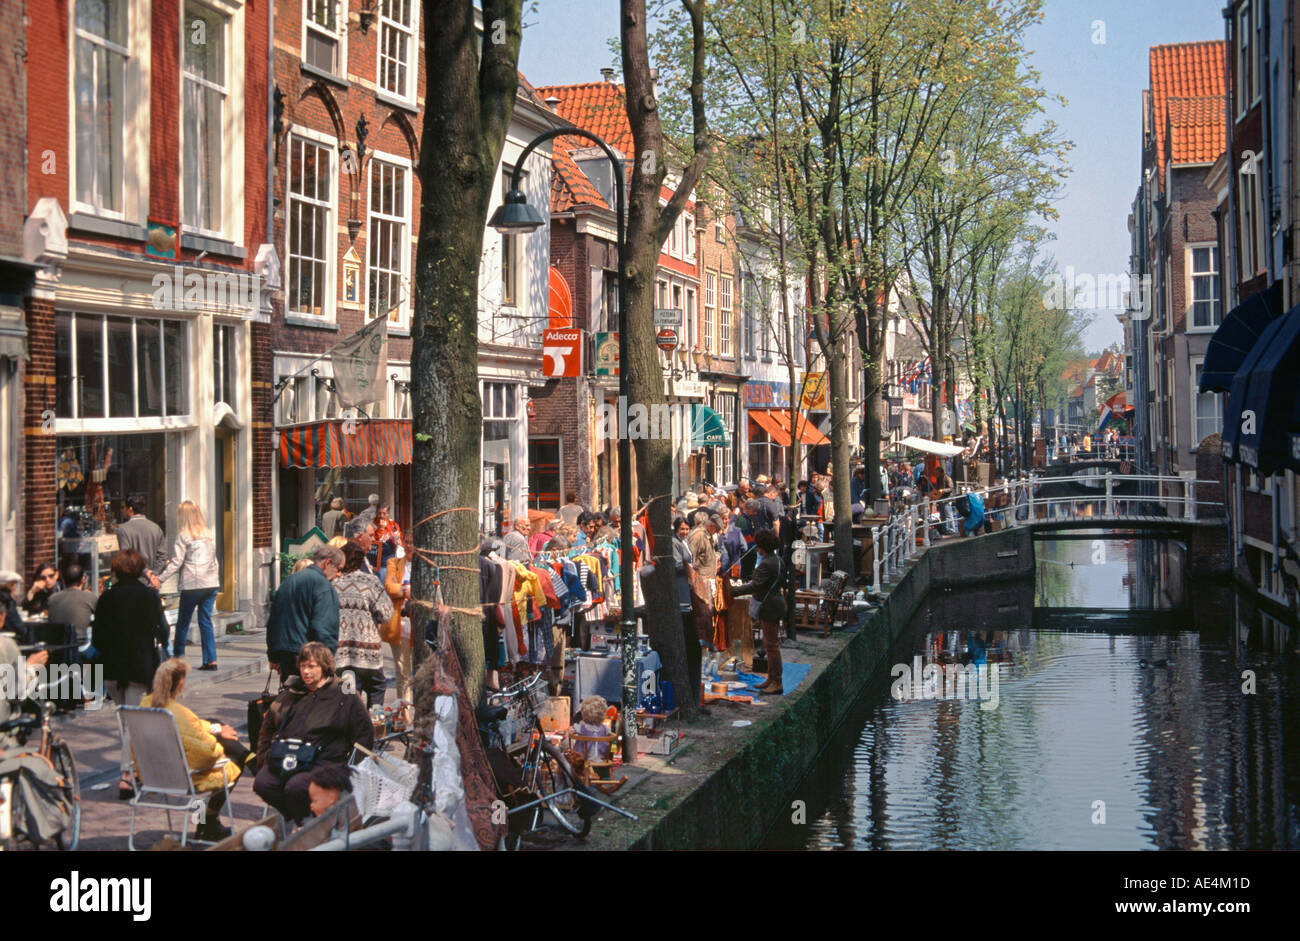 Niederlande Delft Altstadt Flohmarkt an einer Gracht Stock Photo